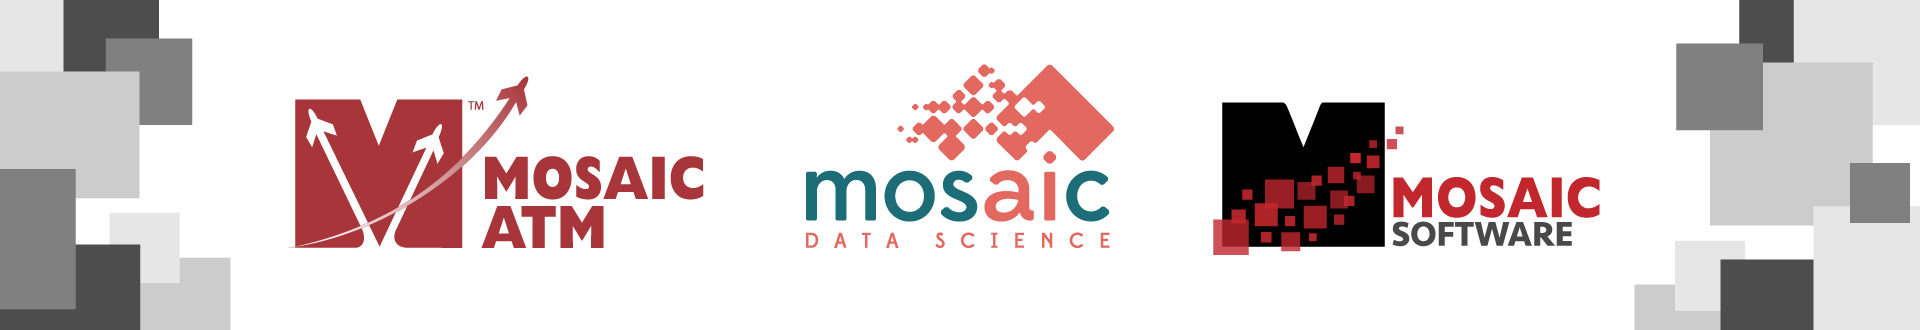 Mosaic ATM Company Logo